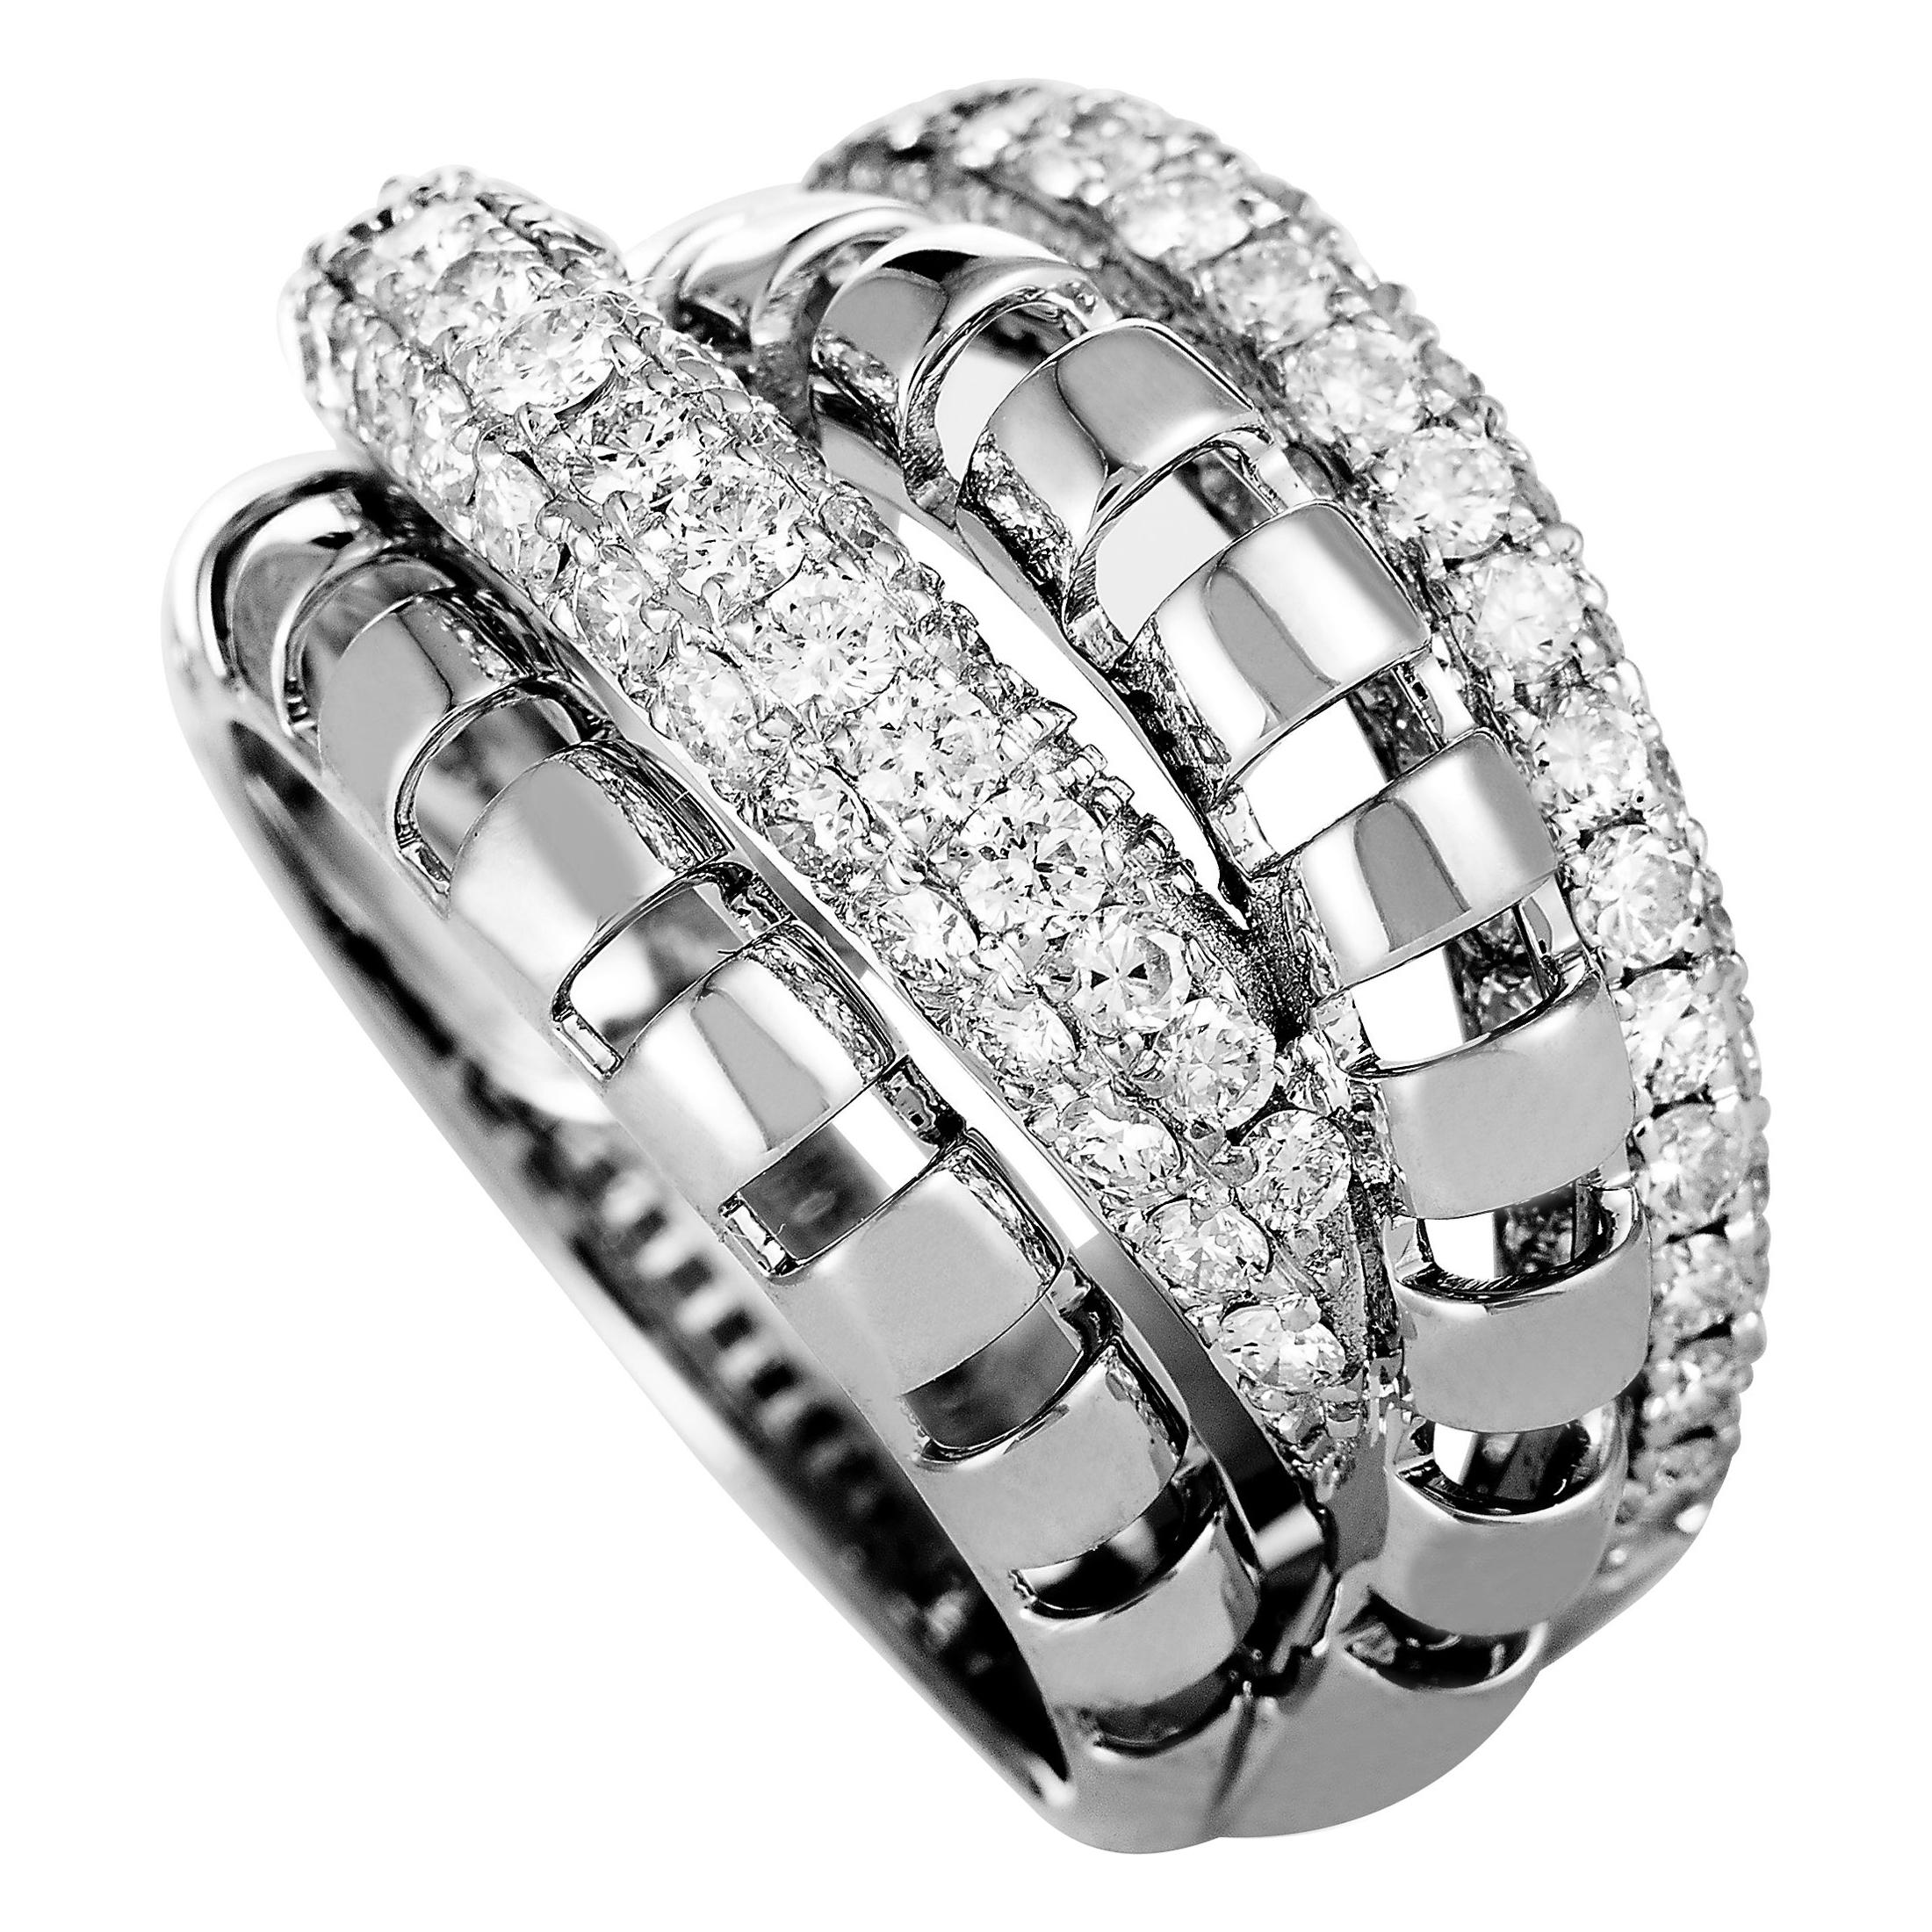 LB Exclusive 18 Karat White Gold Diamond Pave Multi-Band Ring